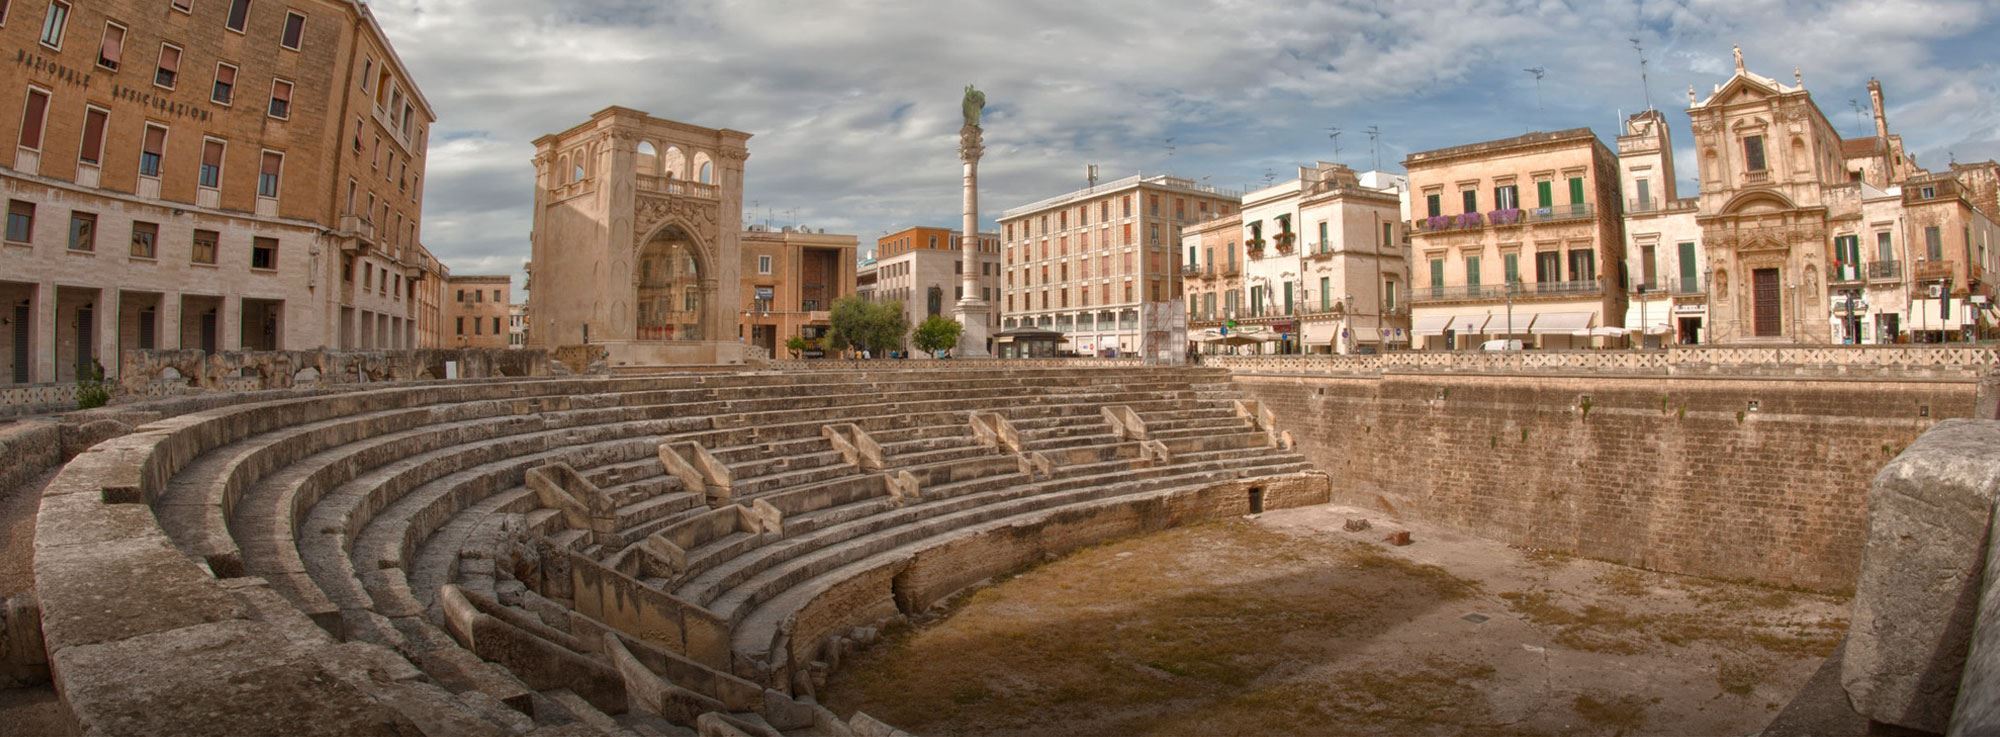 Lecce: Settimana della Cultura 2019